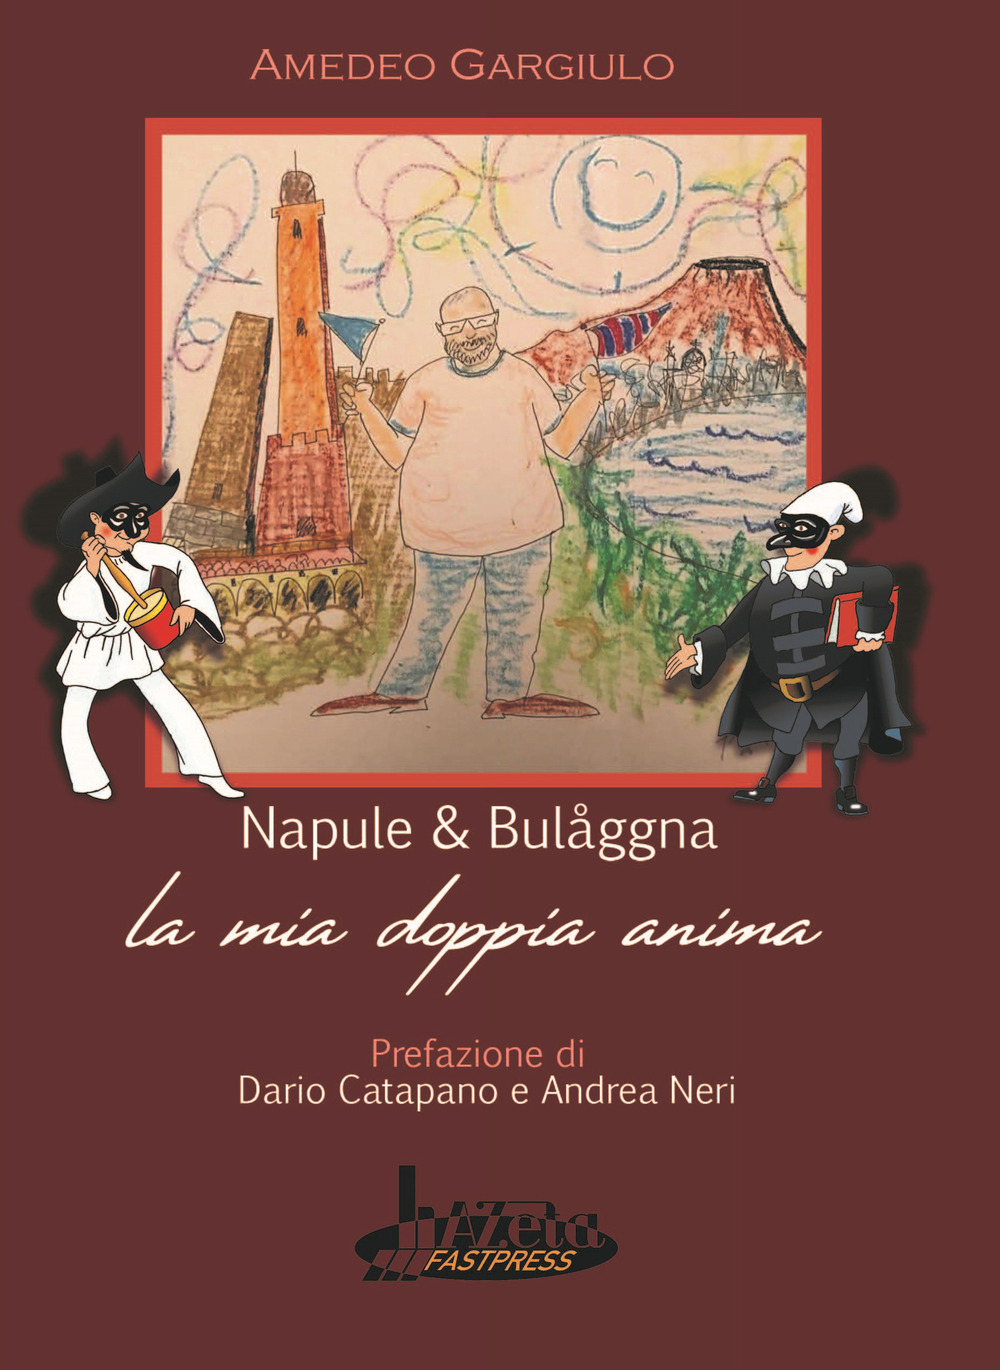 Libri Amedeo Gargiulo - Napule E Bulaggna. La Mia Doppia Anima NUOVO SIGILLATO, EDIZIONE DEL 01/01/2022 SUBITO DISPONIBILE